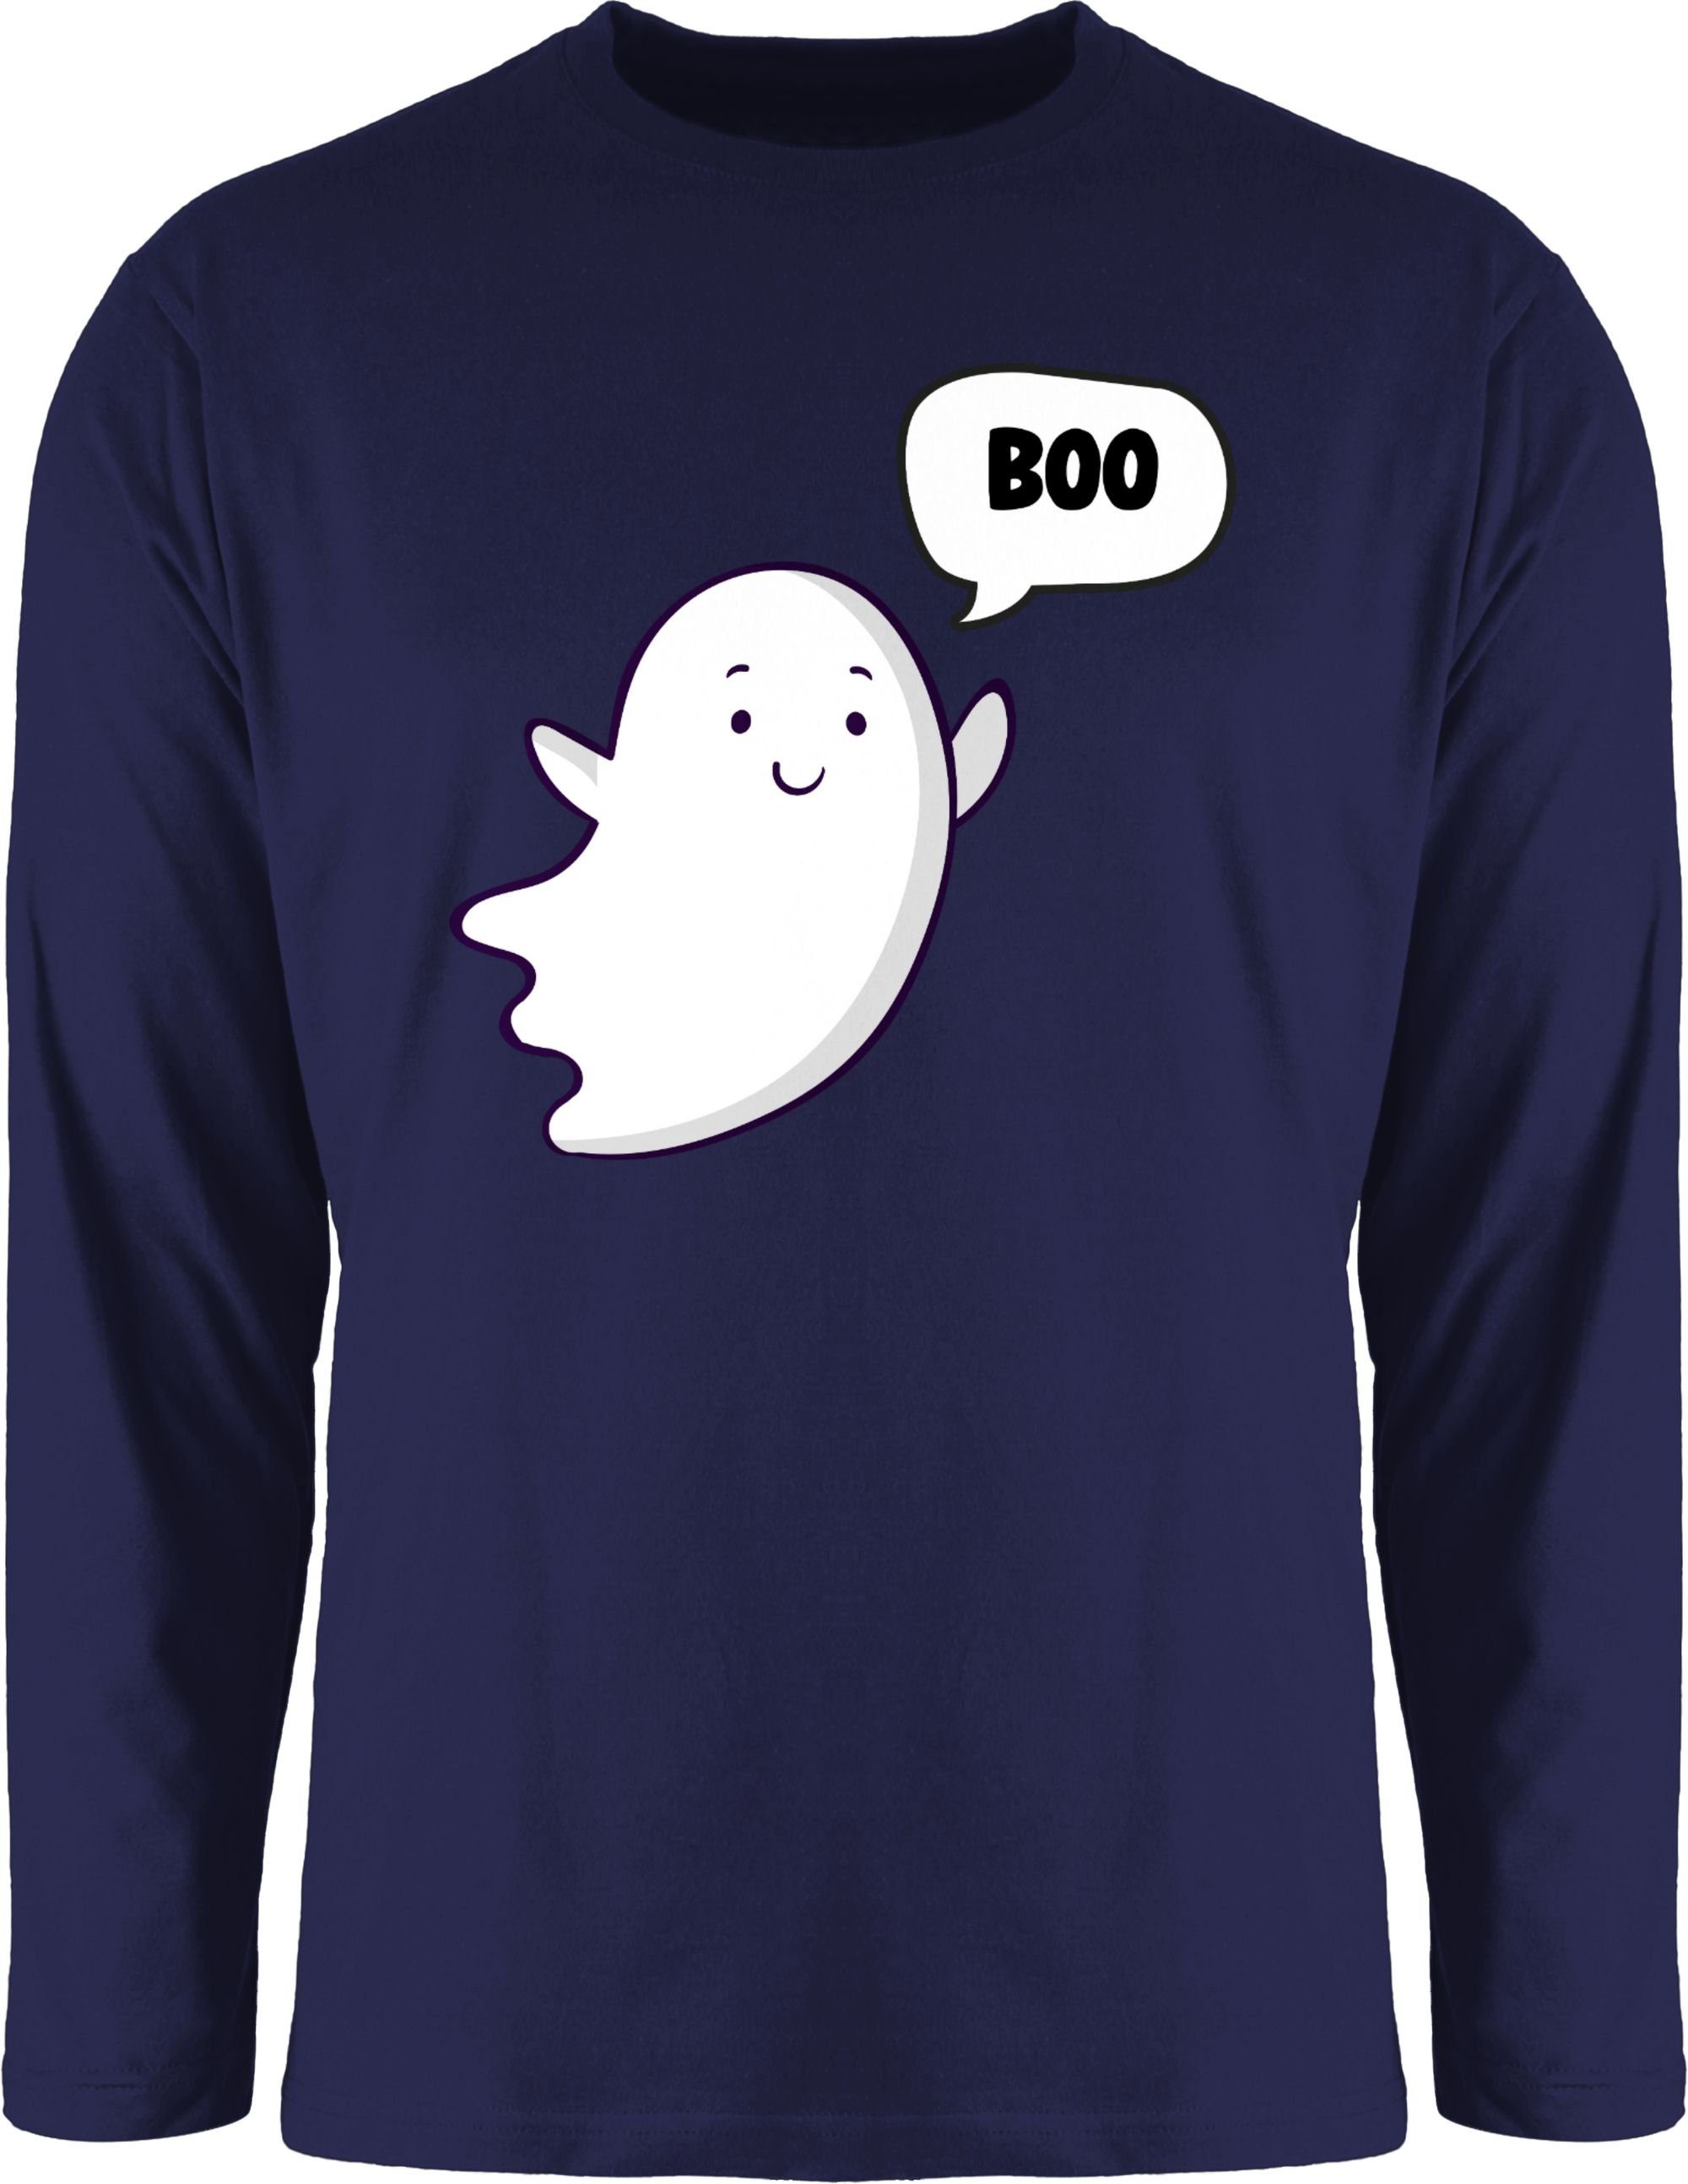 2 Rundhalsshirt Ghost Halloween Gespenst Kostüme Shirtracer Blau kleiner Geist Süßer Herren Geister Navy